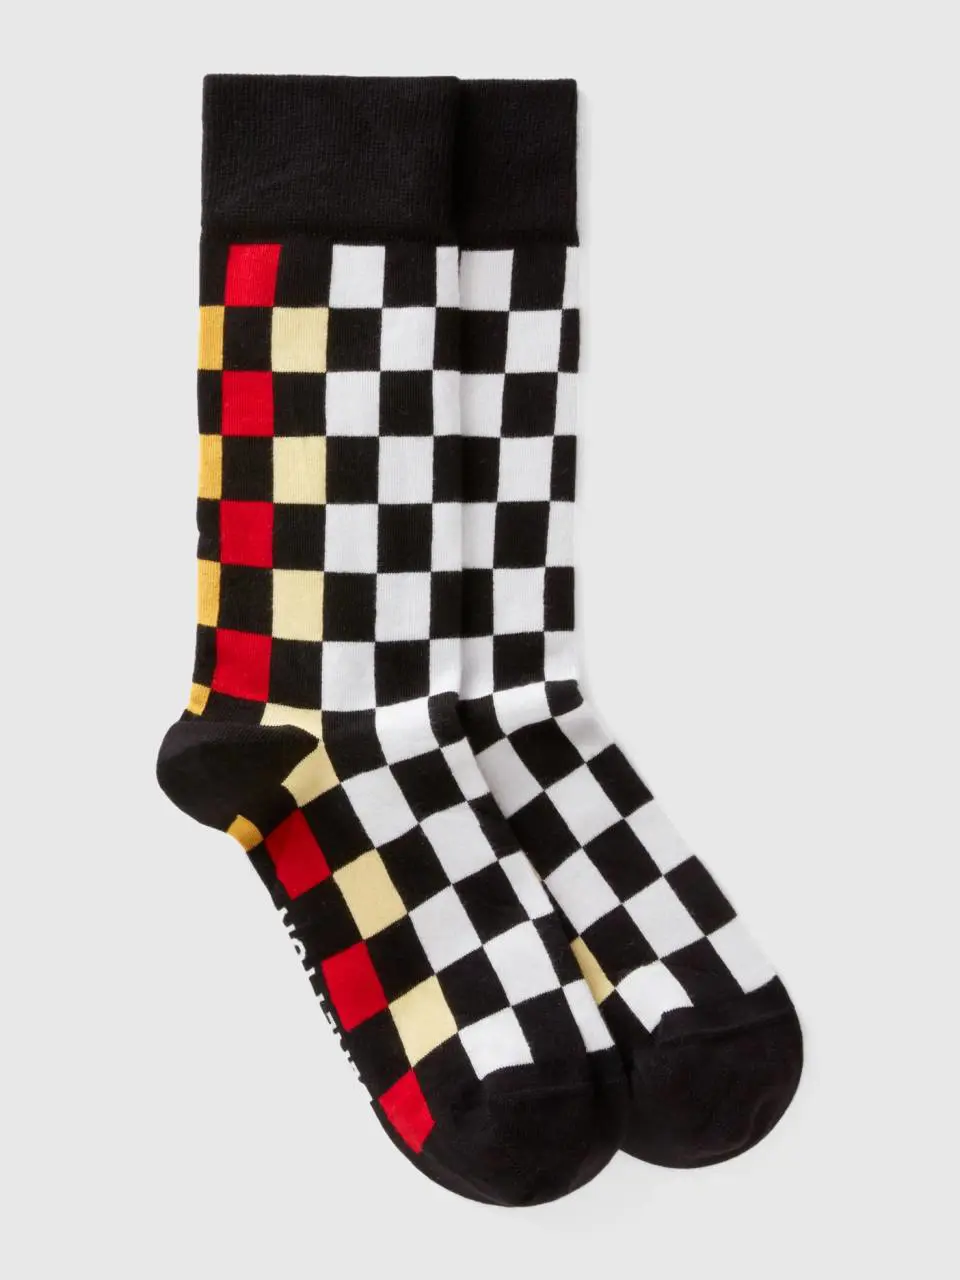 Benetton multicolored checkered socks. 1